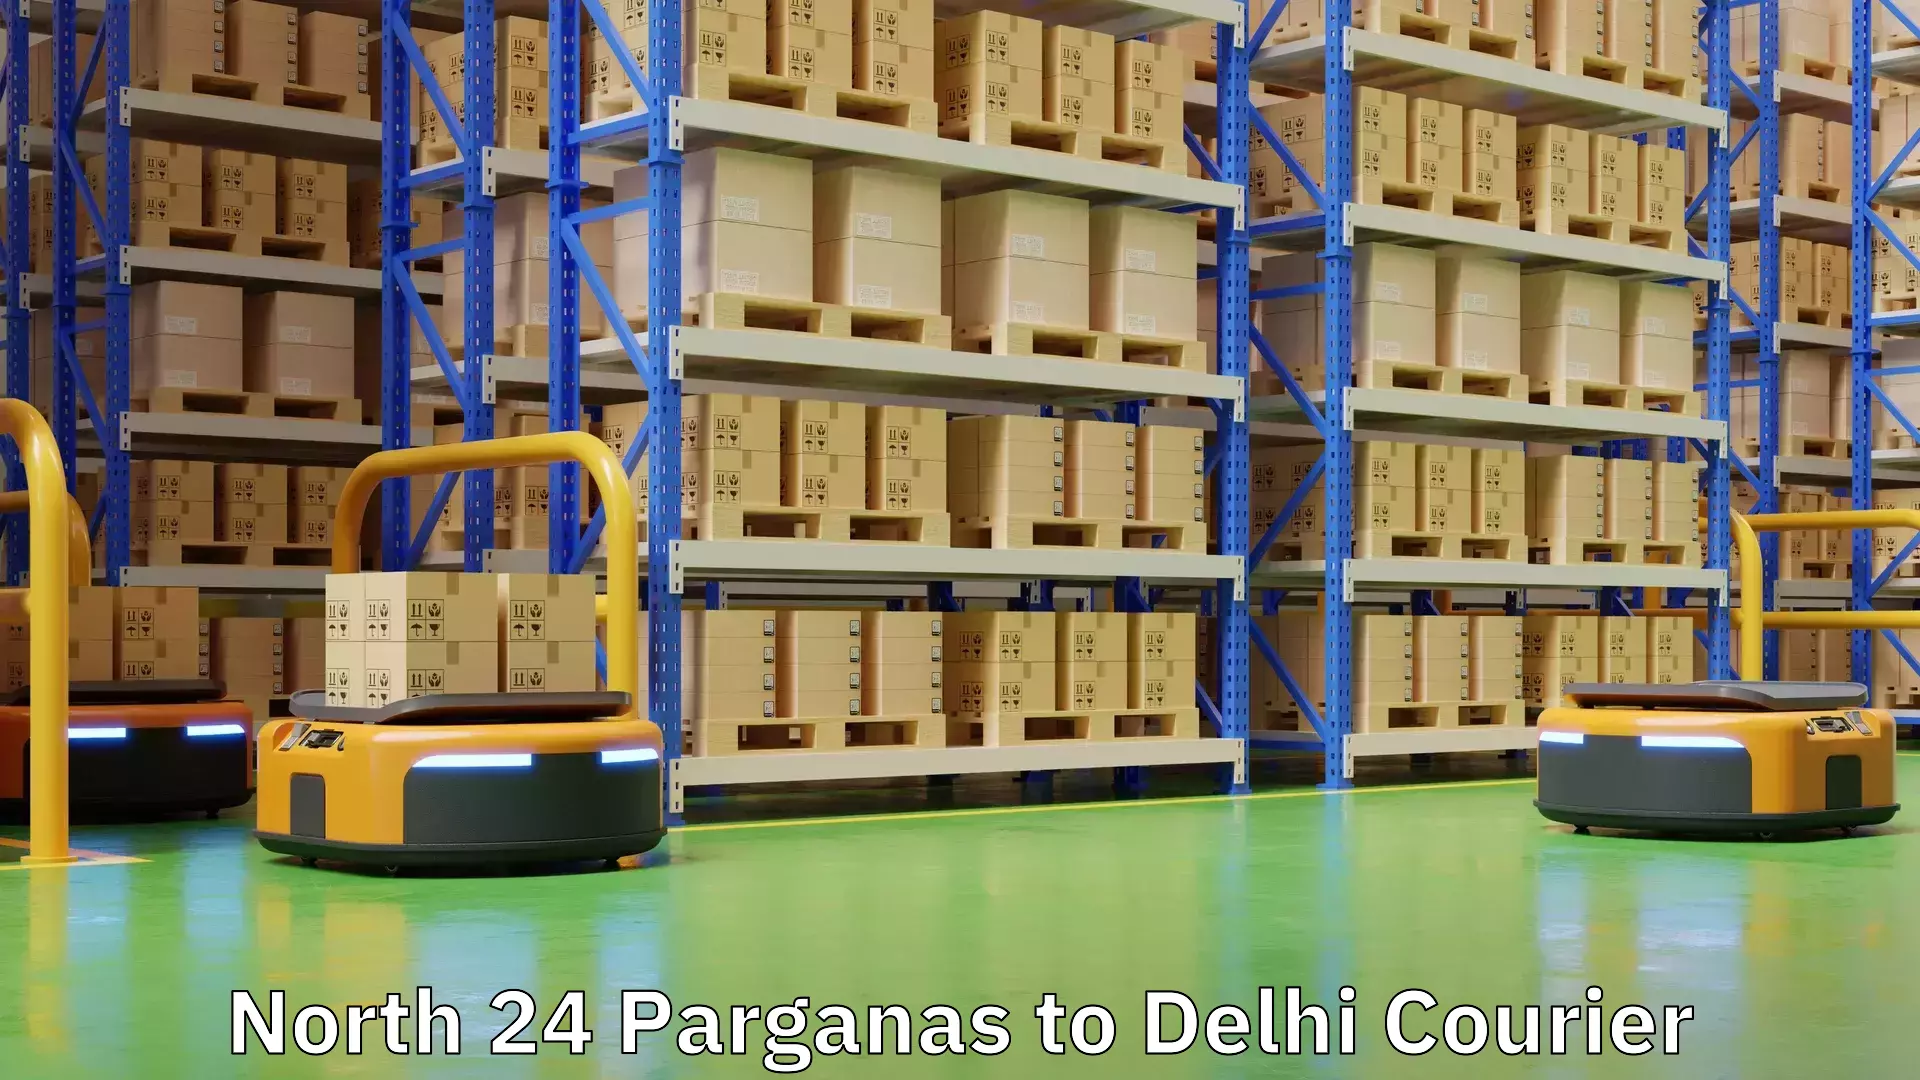 Courier service efficiency North 24 Parganas to Delhi